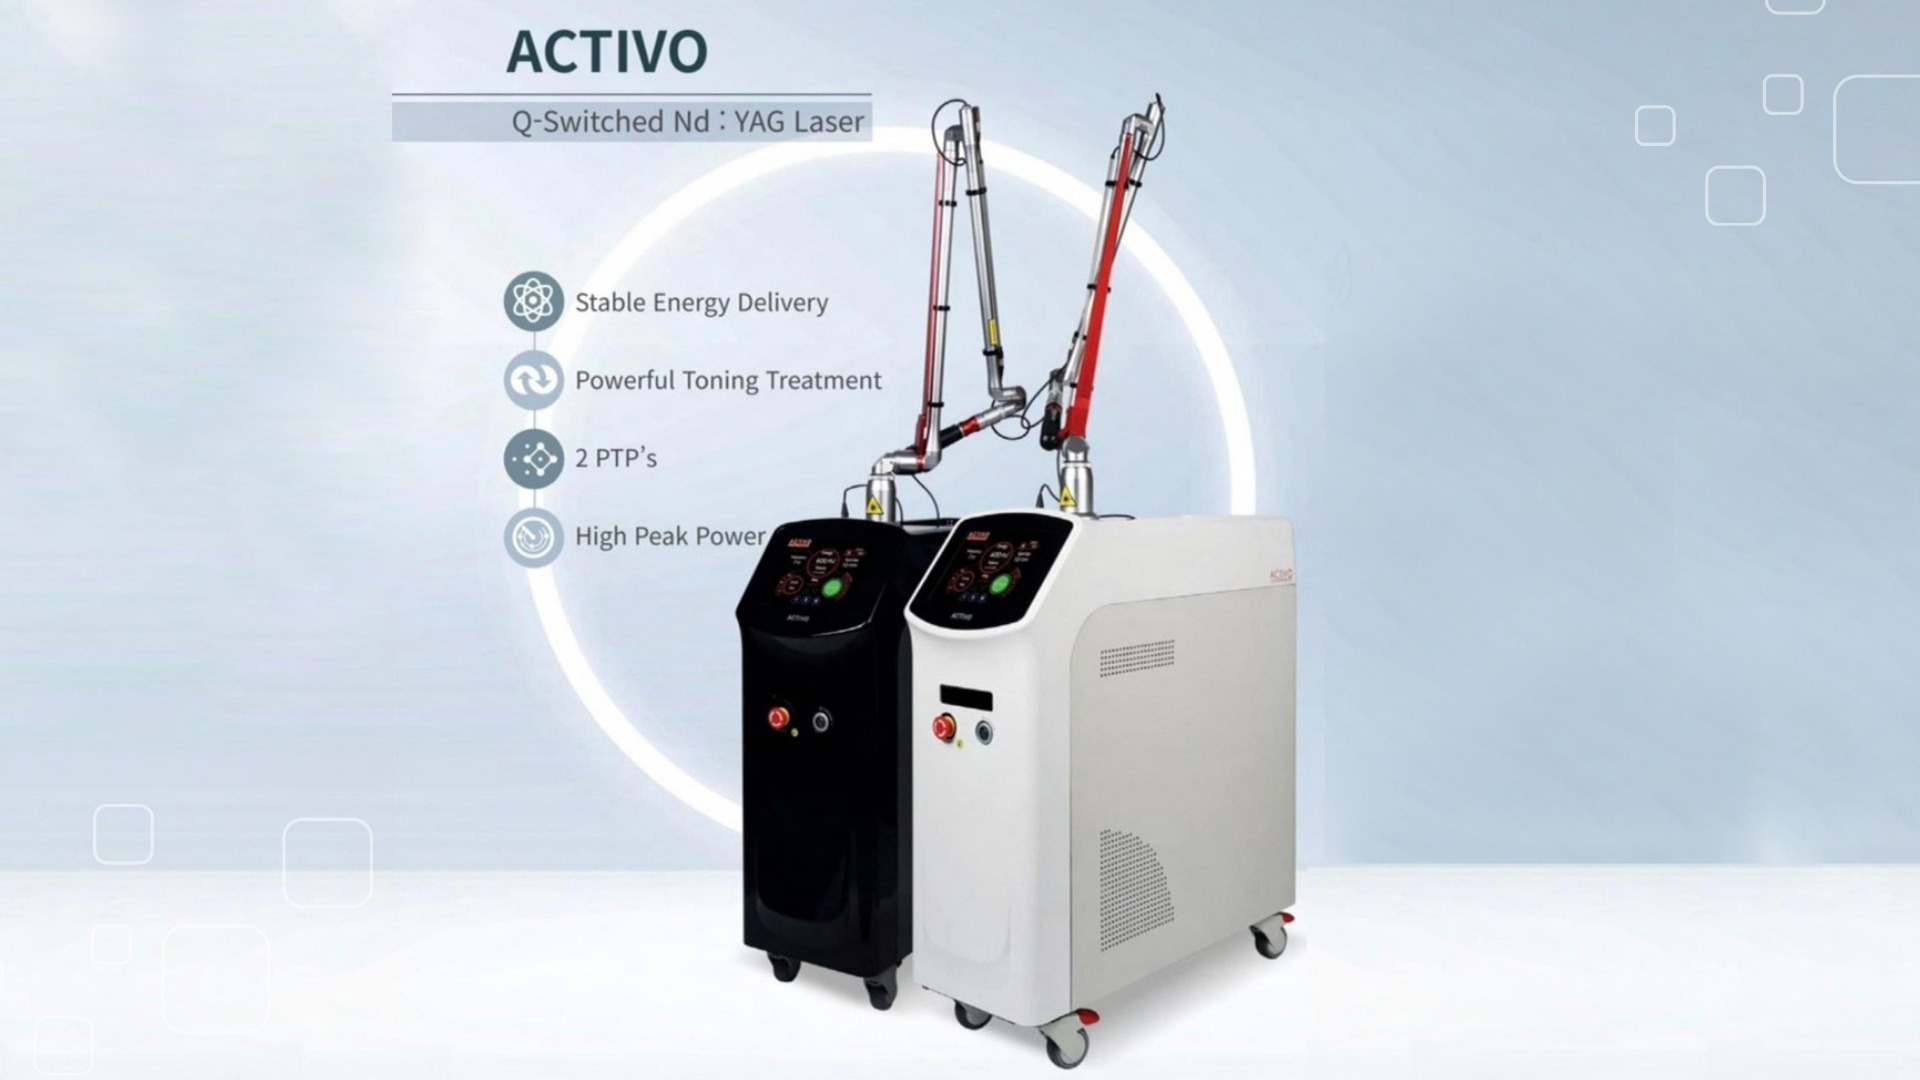 Giới thiệu máy trị nám Laser Q- Switched ND Yag Activo